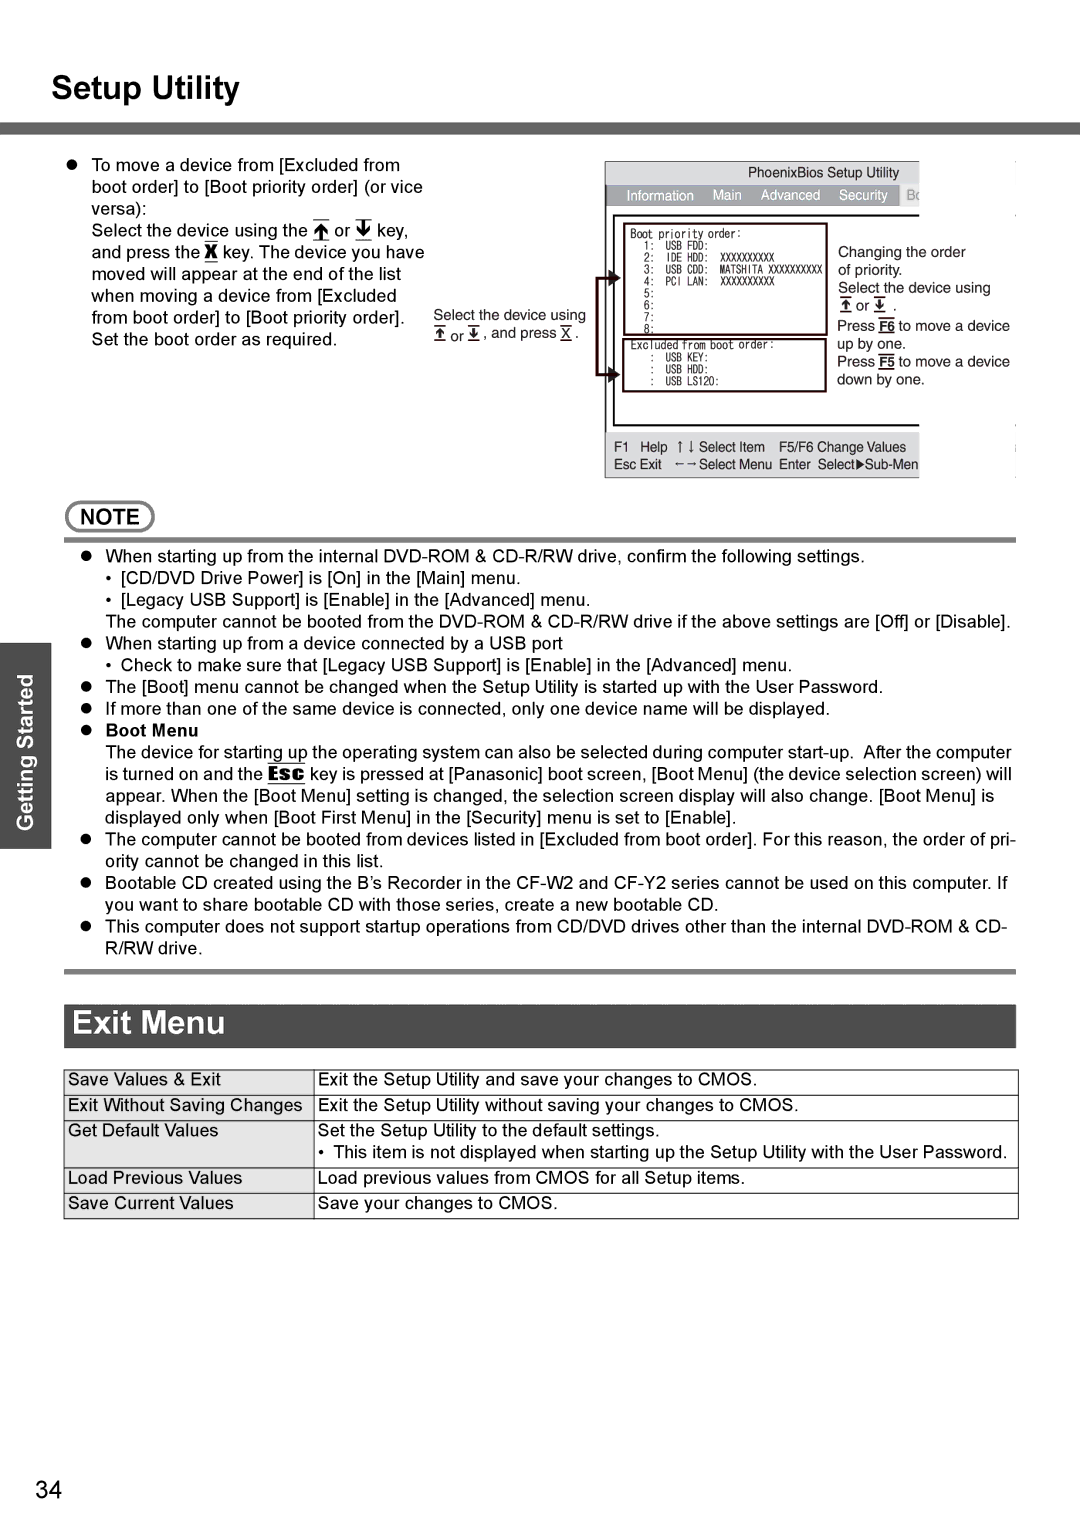 Panasonic CF-W4 Series manual Exit Menu, Boot Menu 